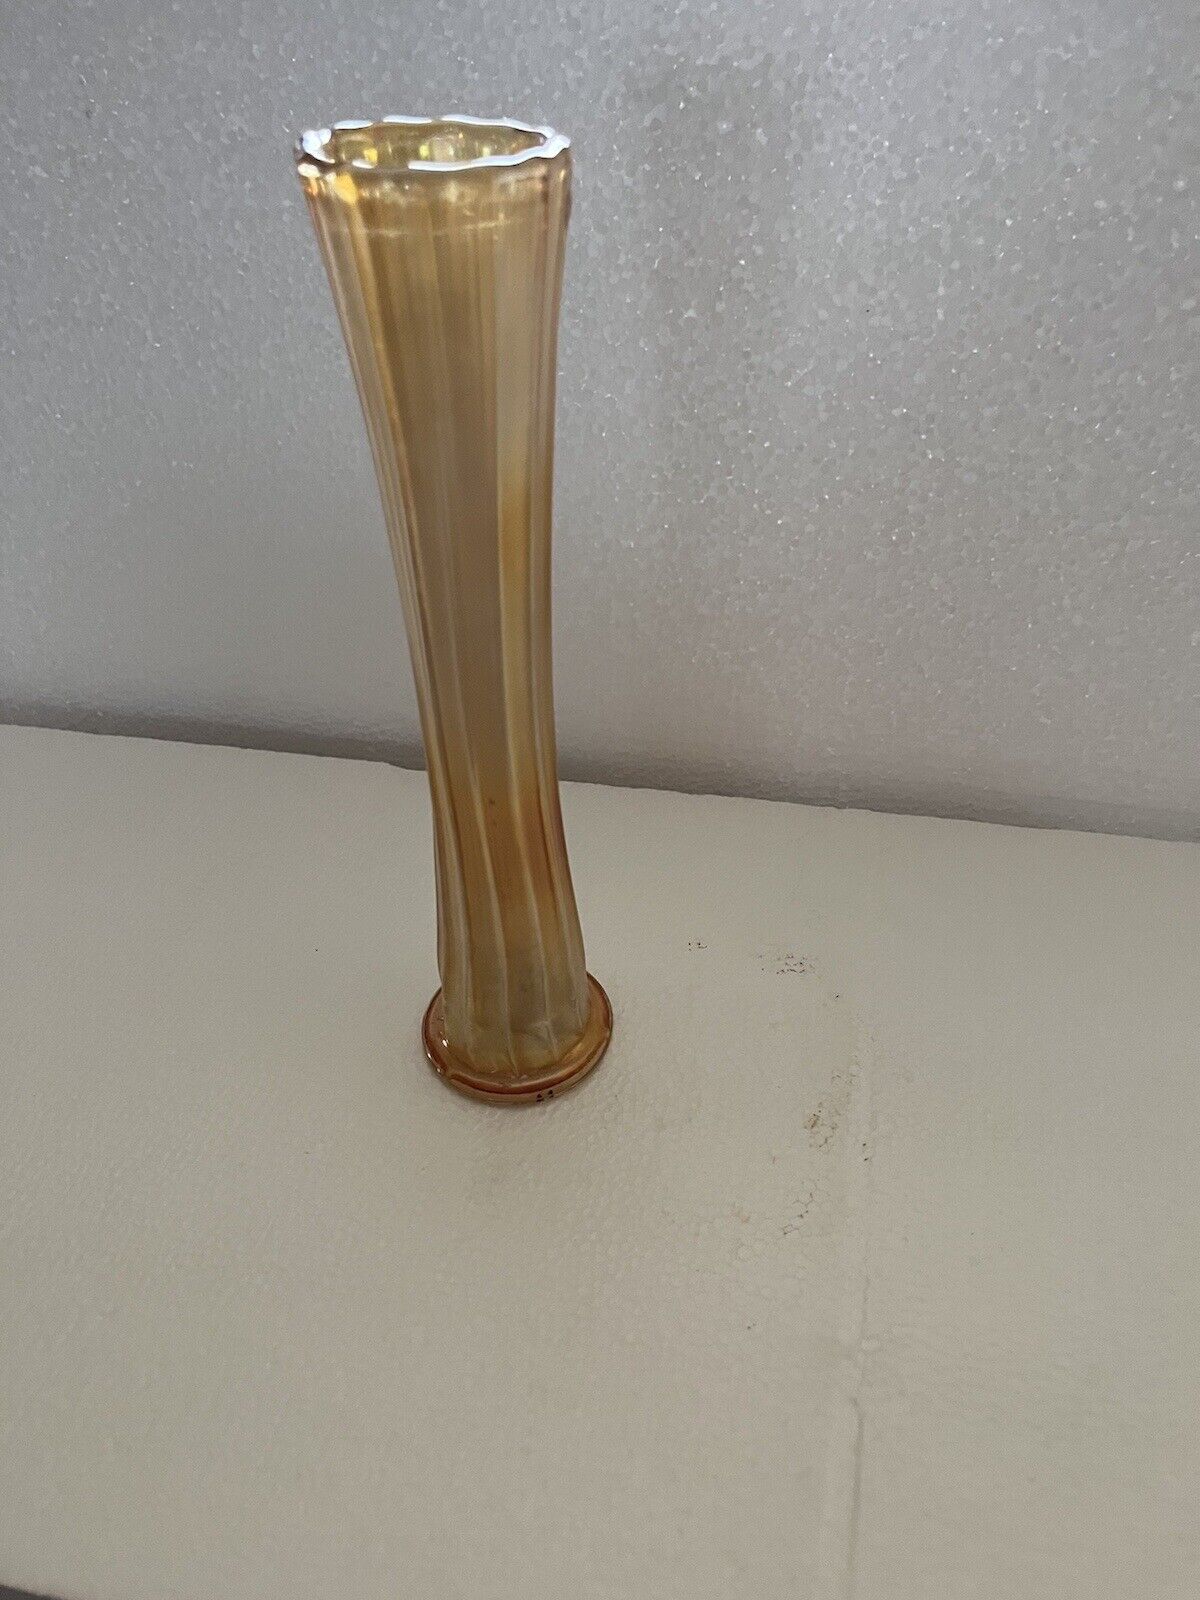 Vintage Marigold Ribbed Carnival Glass Trumpet Vase